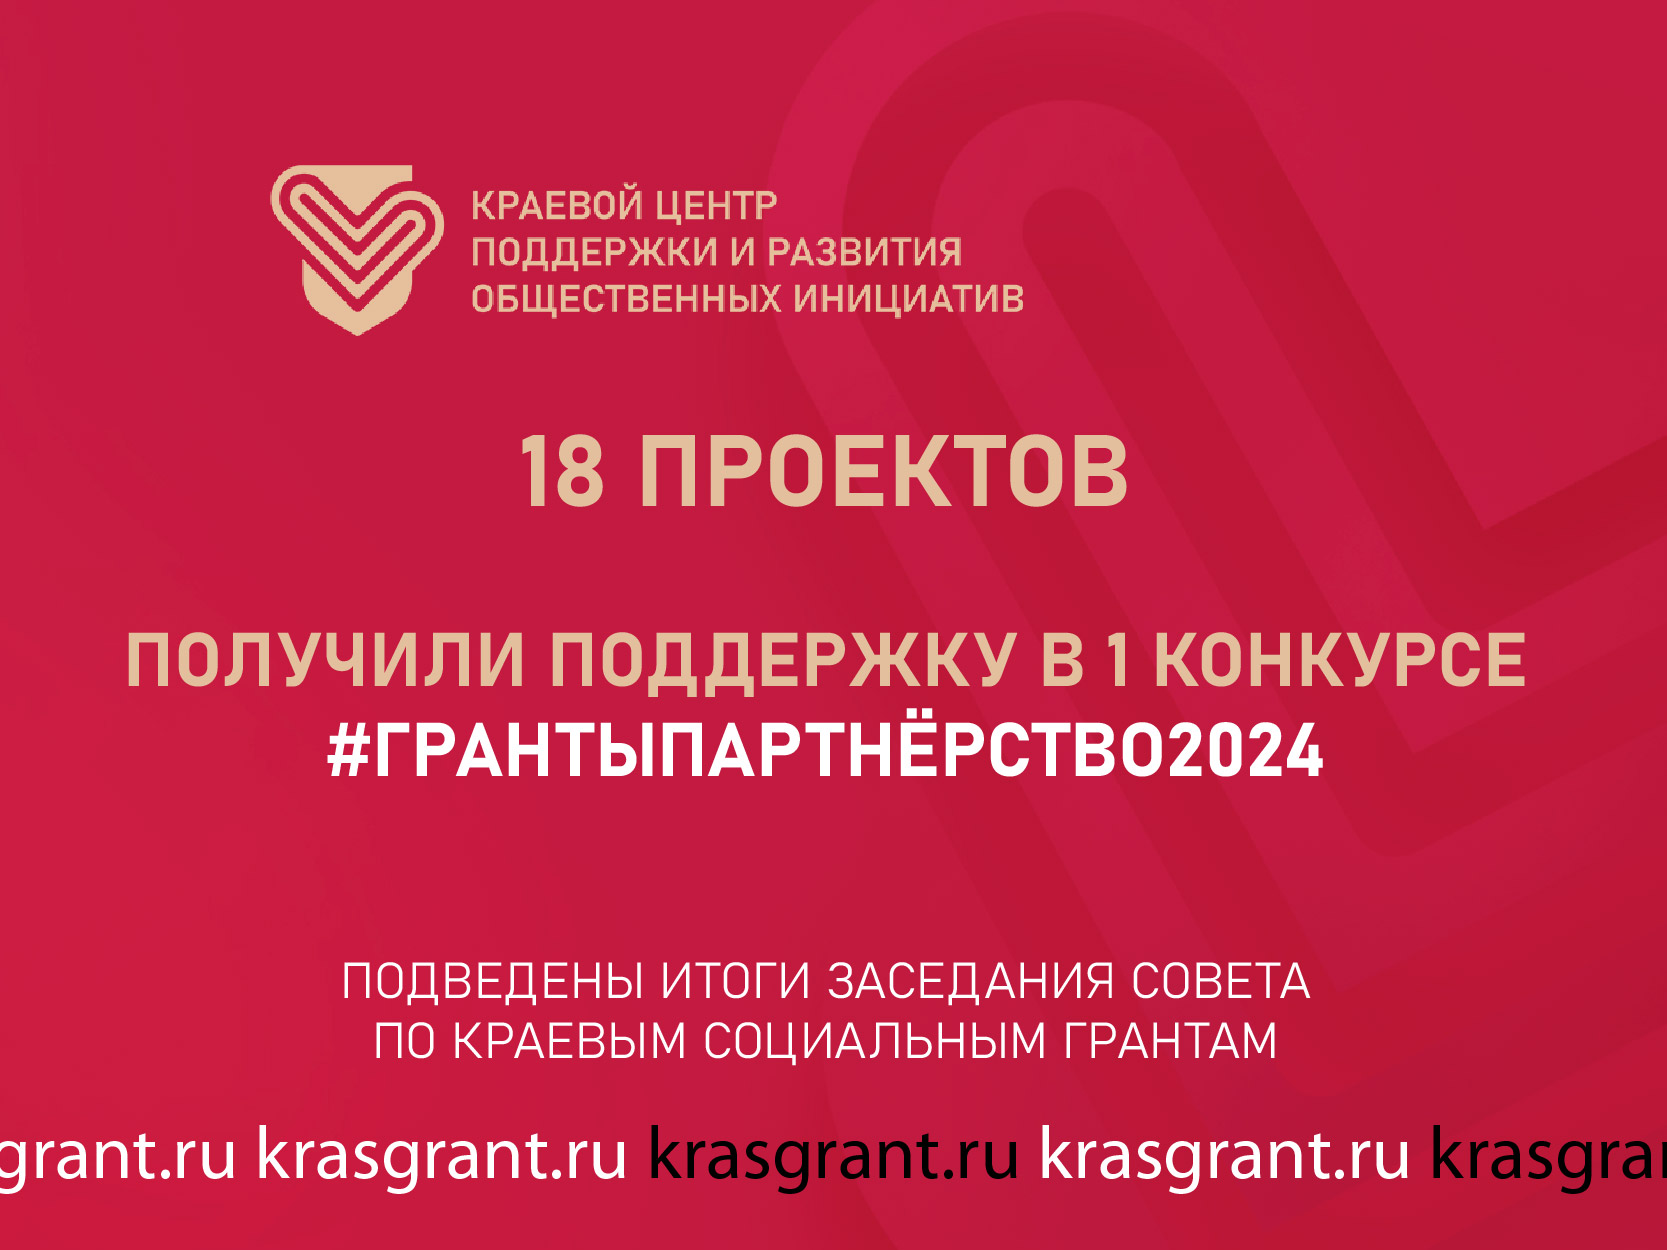  Итоги 1 конкурса грантовой программы Красноярского края «Партнерство» 2024 года